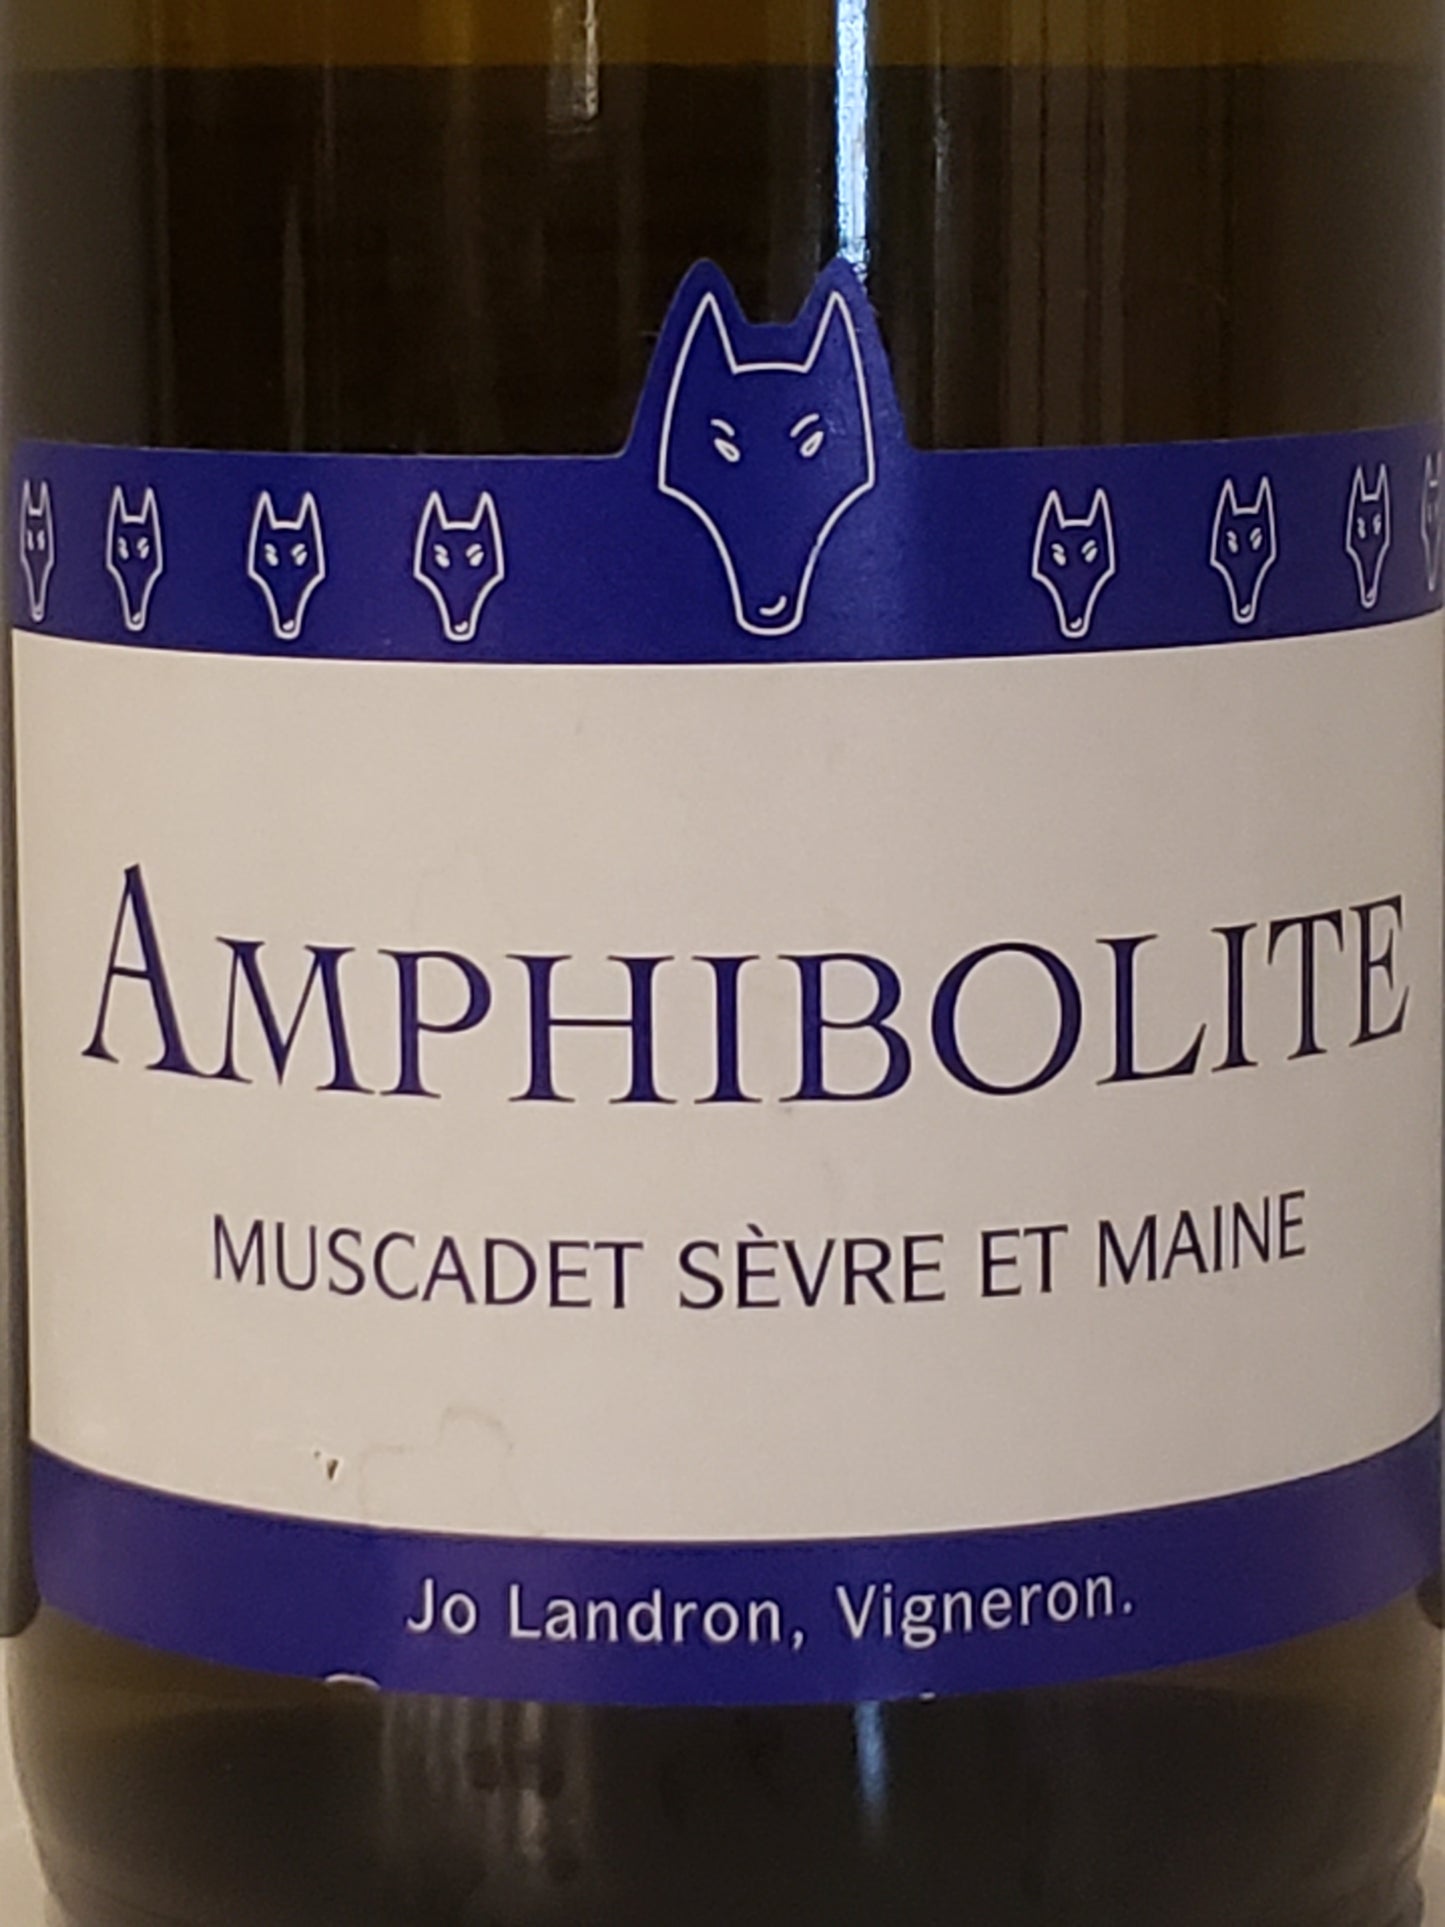 Jo Landron 'Amphibolite' - Muscadet Sèvre et Maine